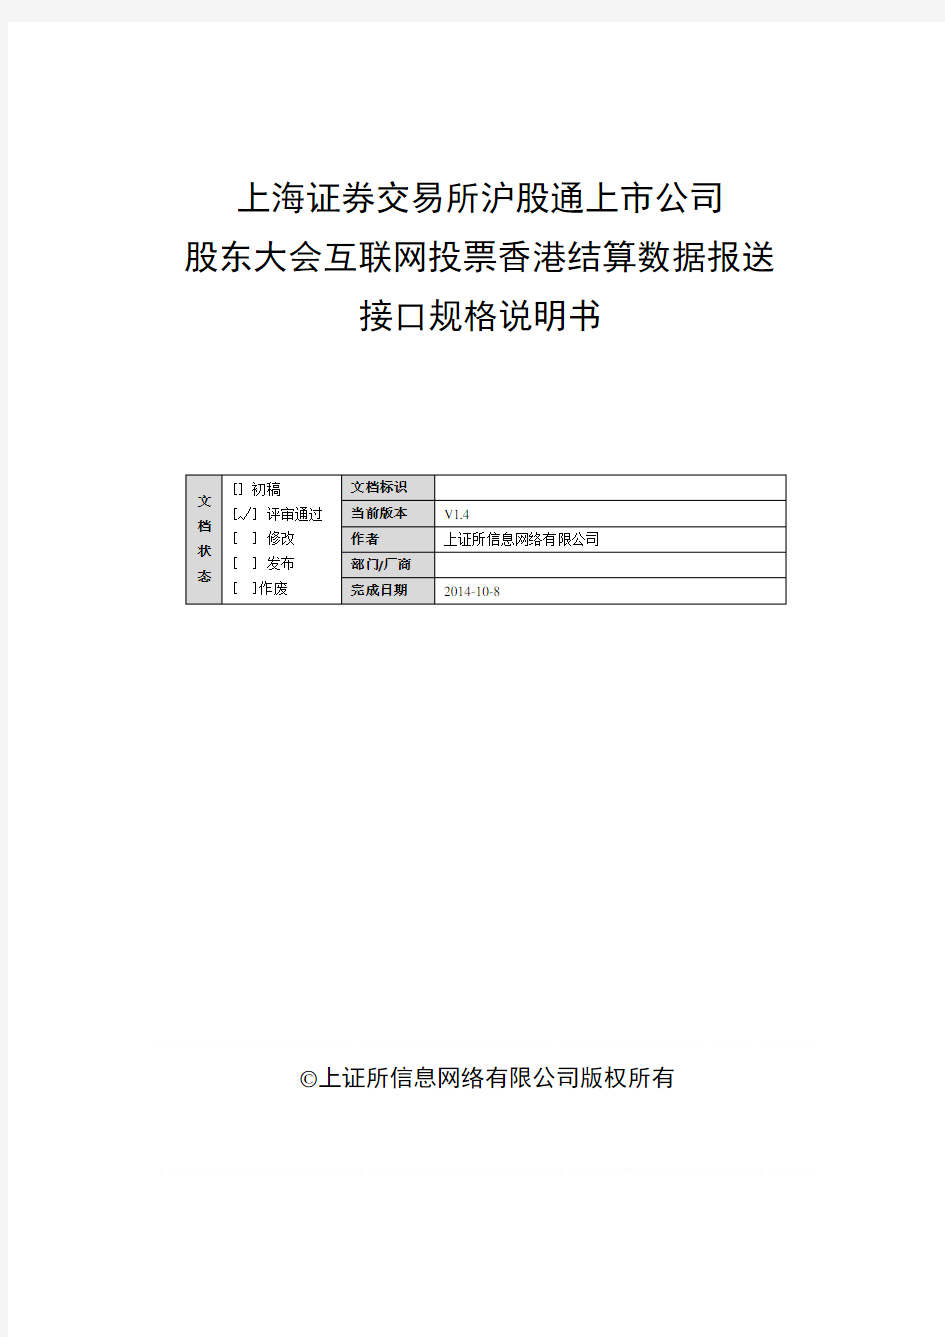 上海证券交易所沪股通上市公司股东大会互联网投票香港结算数据报送接口规格说明书